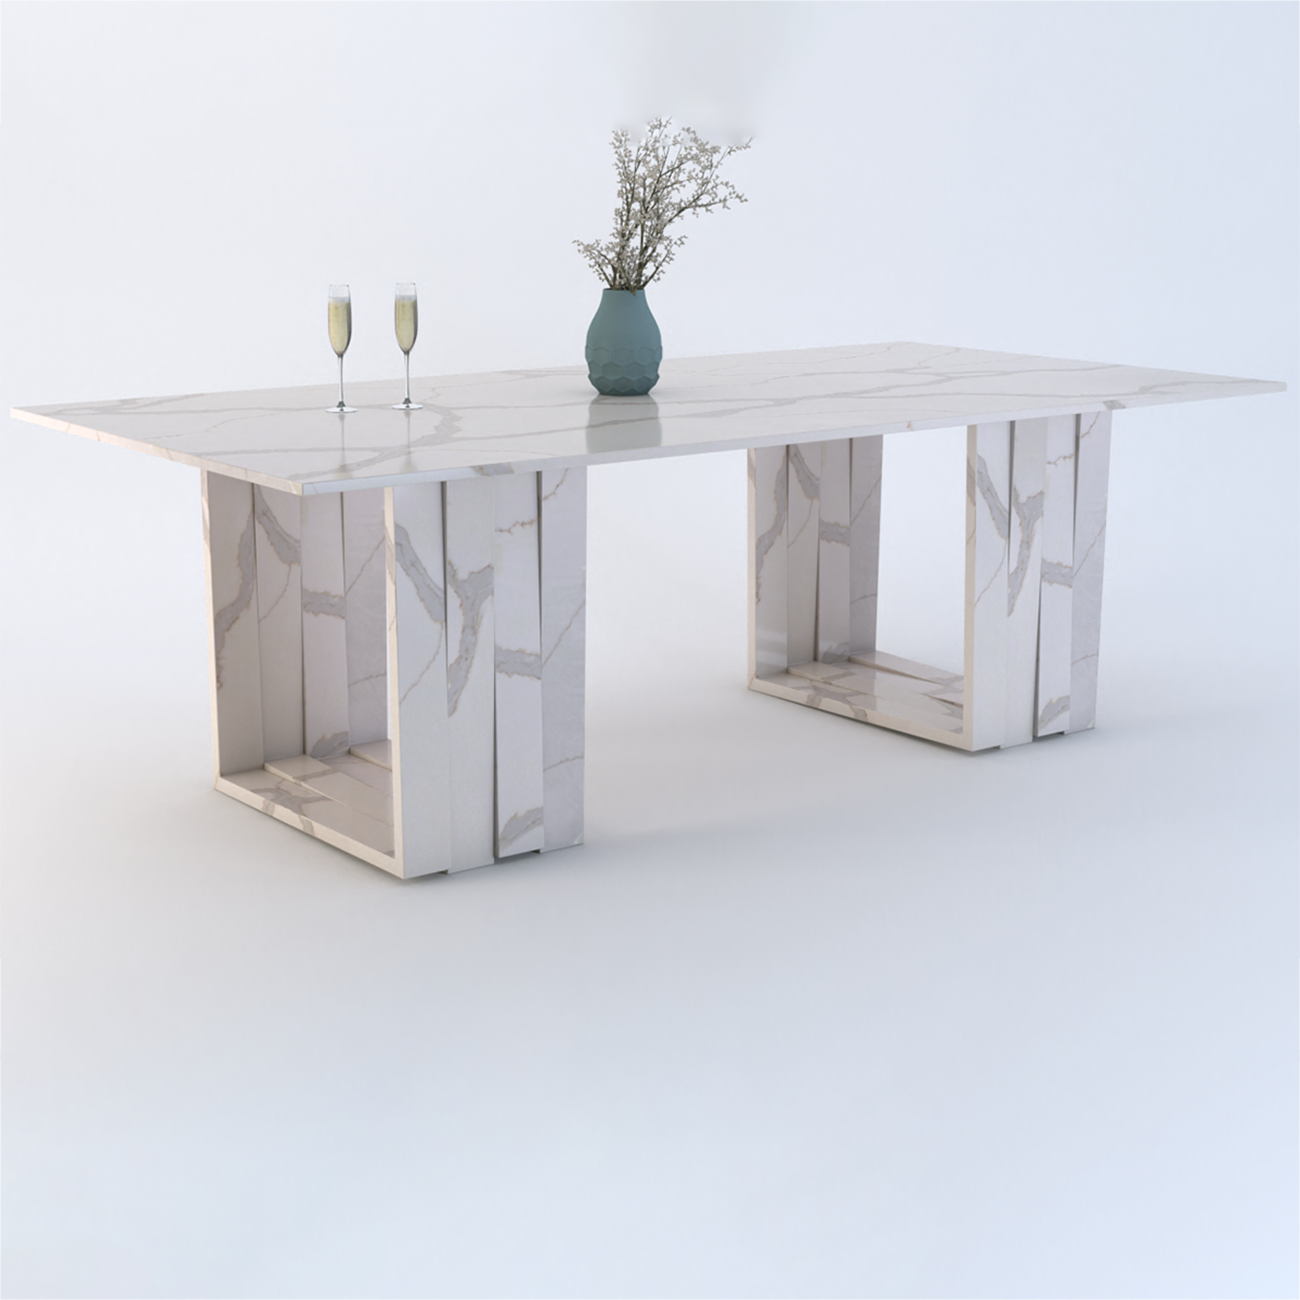 Aria Duo 2.9m Portobello Quartz Dining Table